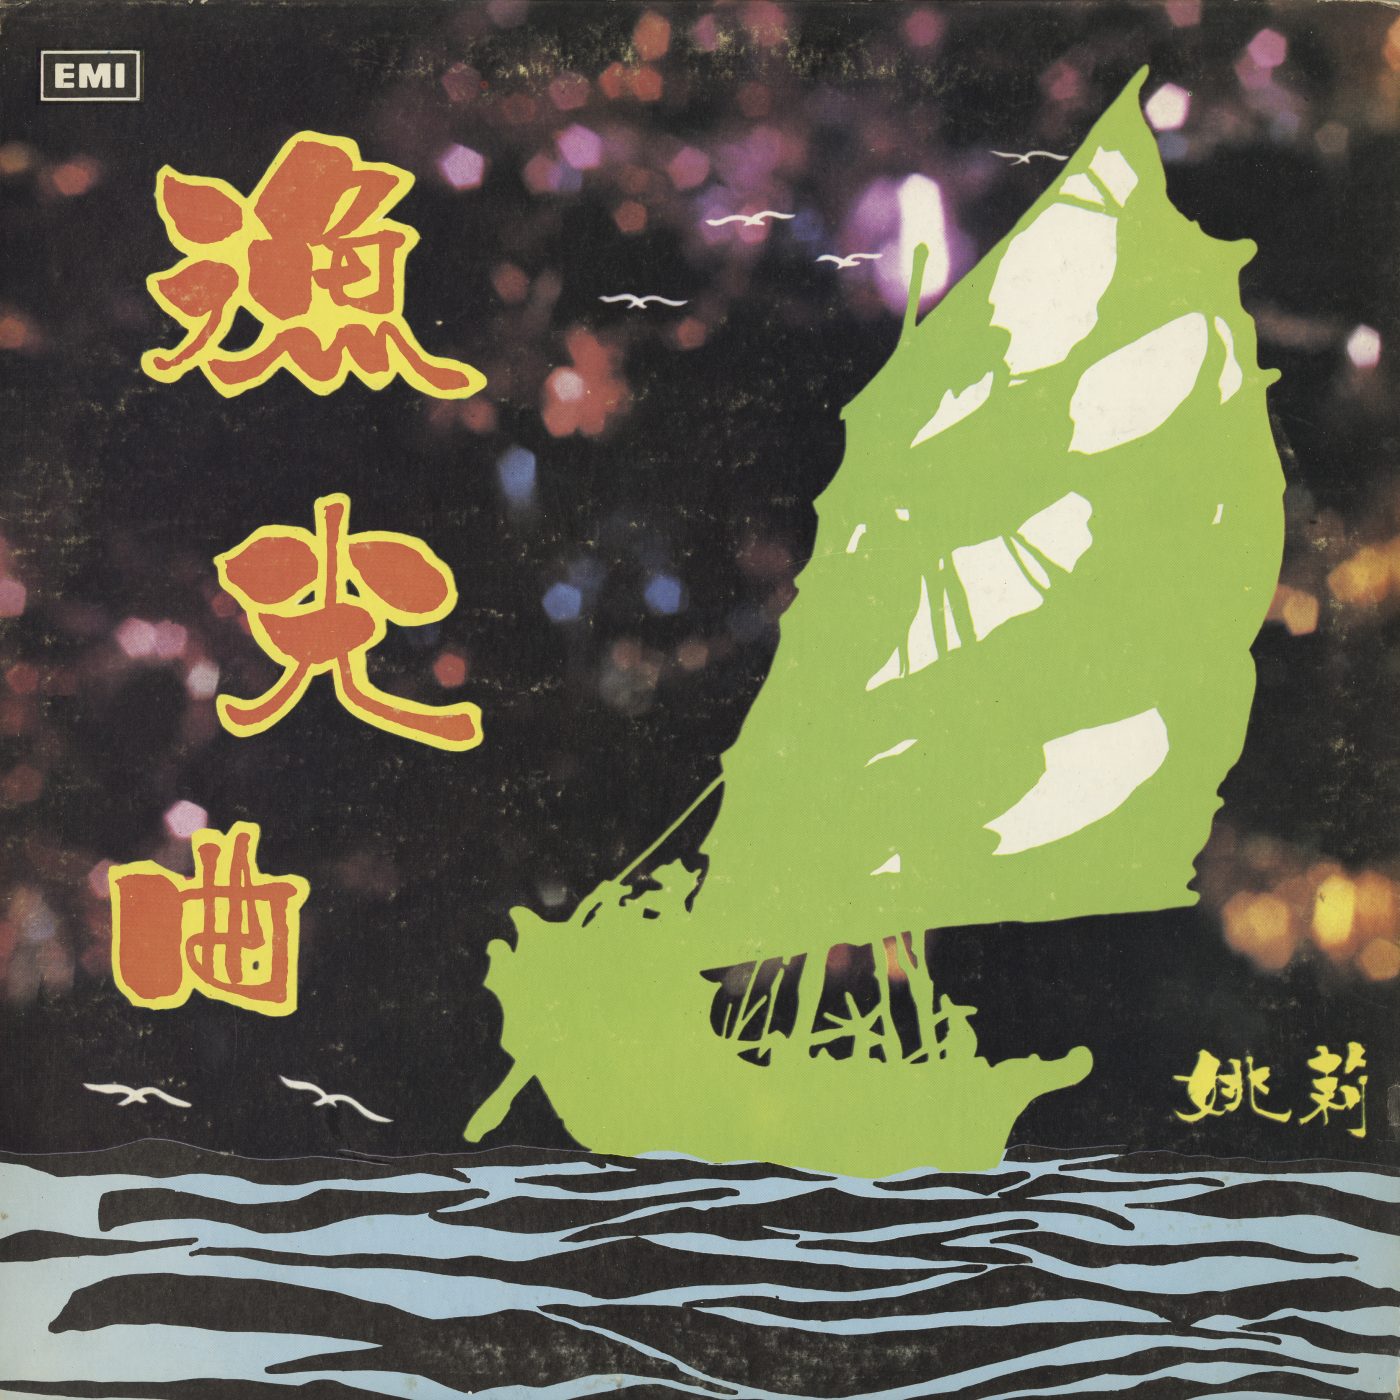 2022.038.020 - 漁光曲 (The Fisherman's Song) by 姚莉  (Yao Lee). EMI/REGAL 1971 Hong Kong. Courtesy of Choi "Nancy" Chan, Museum of Chinese in America (MOCA) Collection.